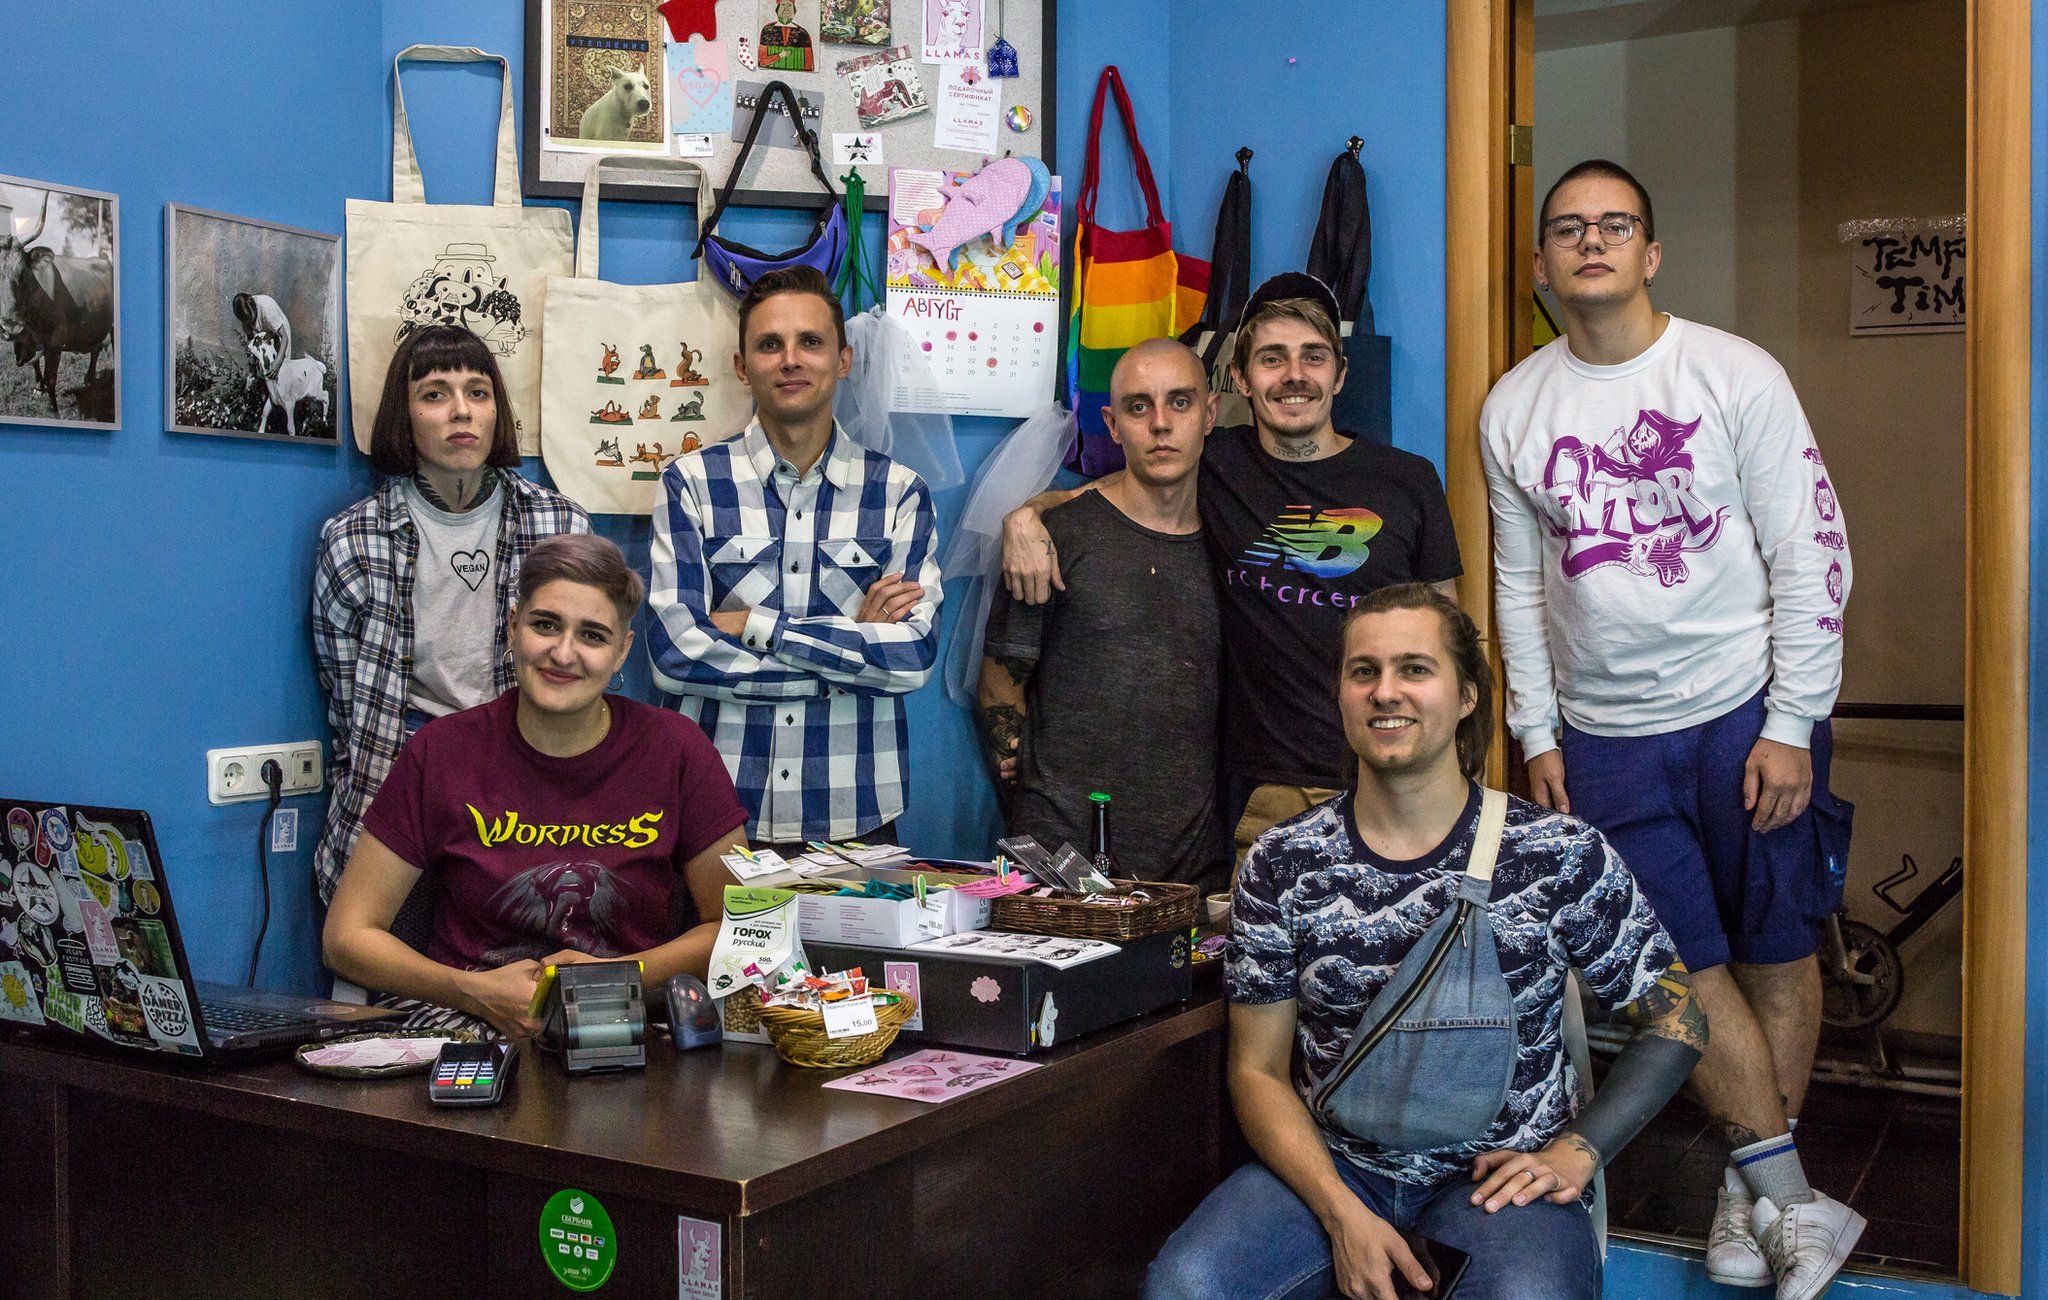 Anya, Igor, Iiuri, Nikita, Danya and staff members at Llamas vegan shop in St Petersburg